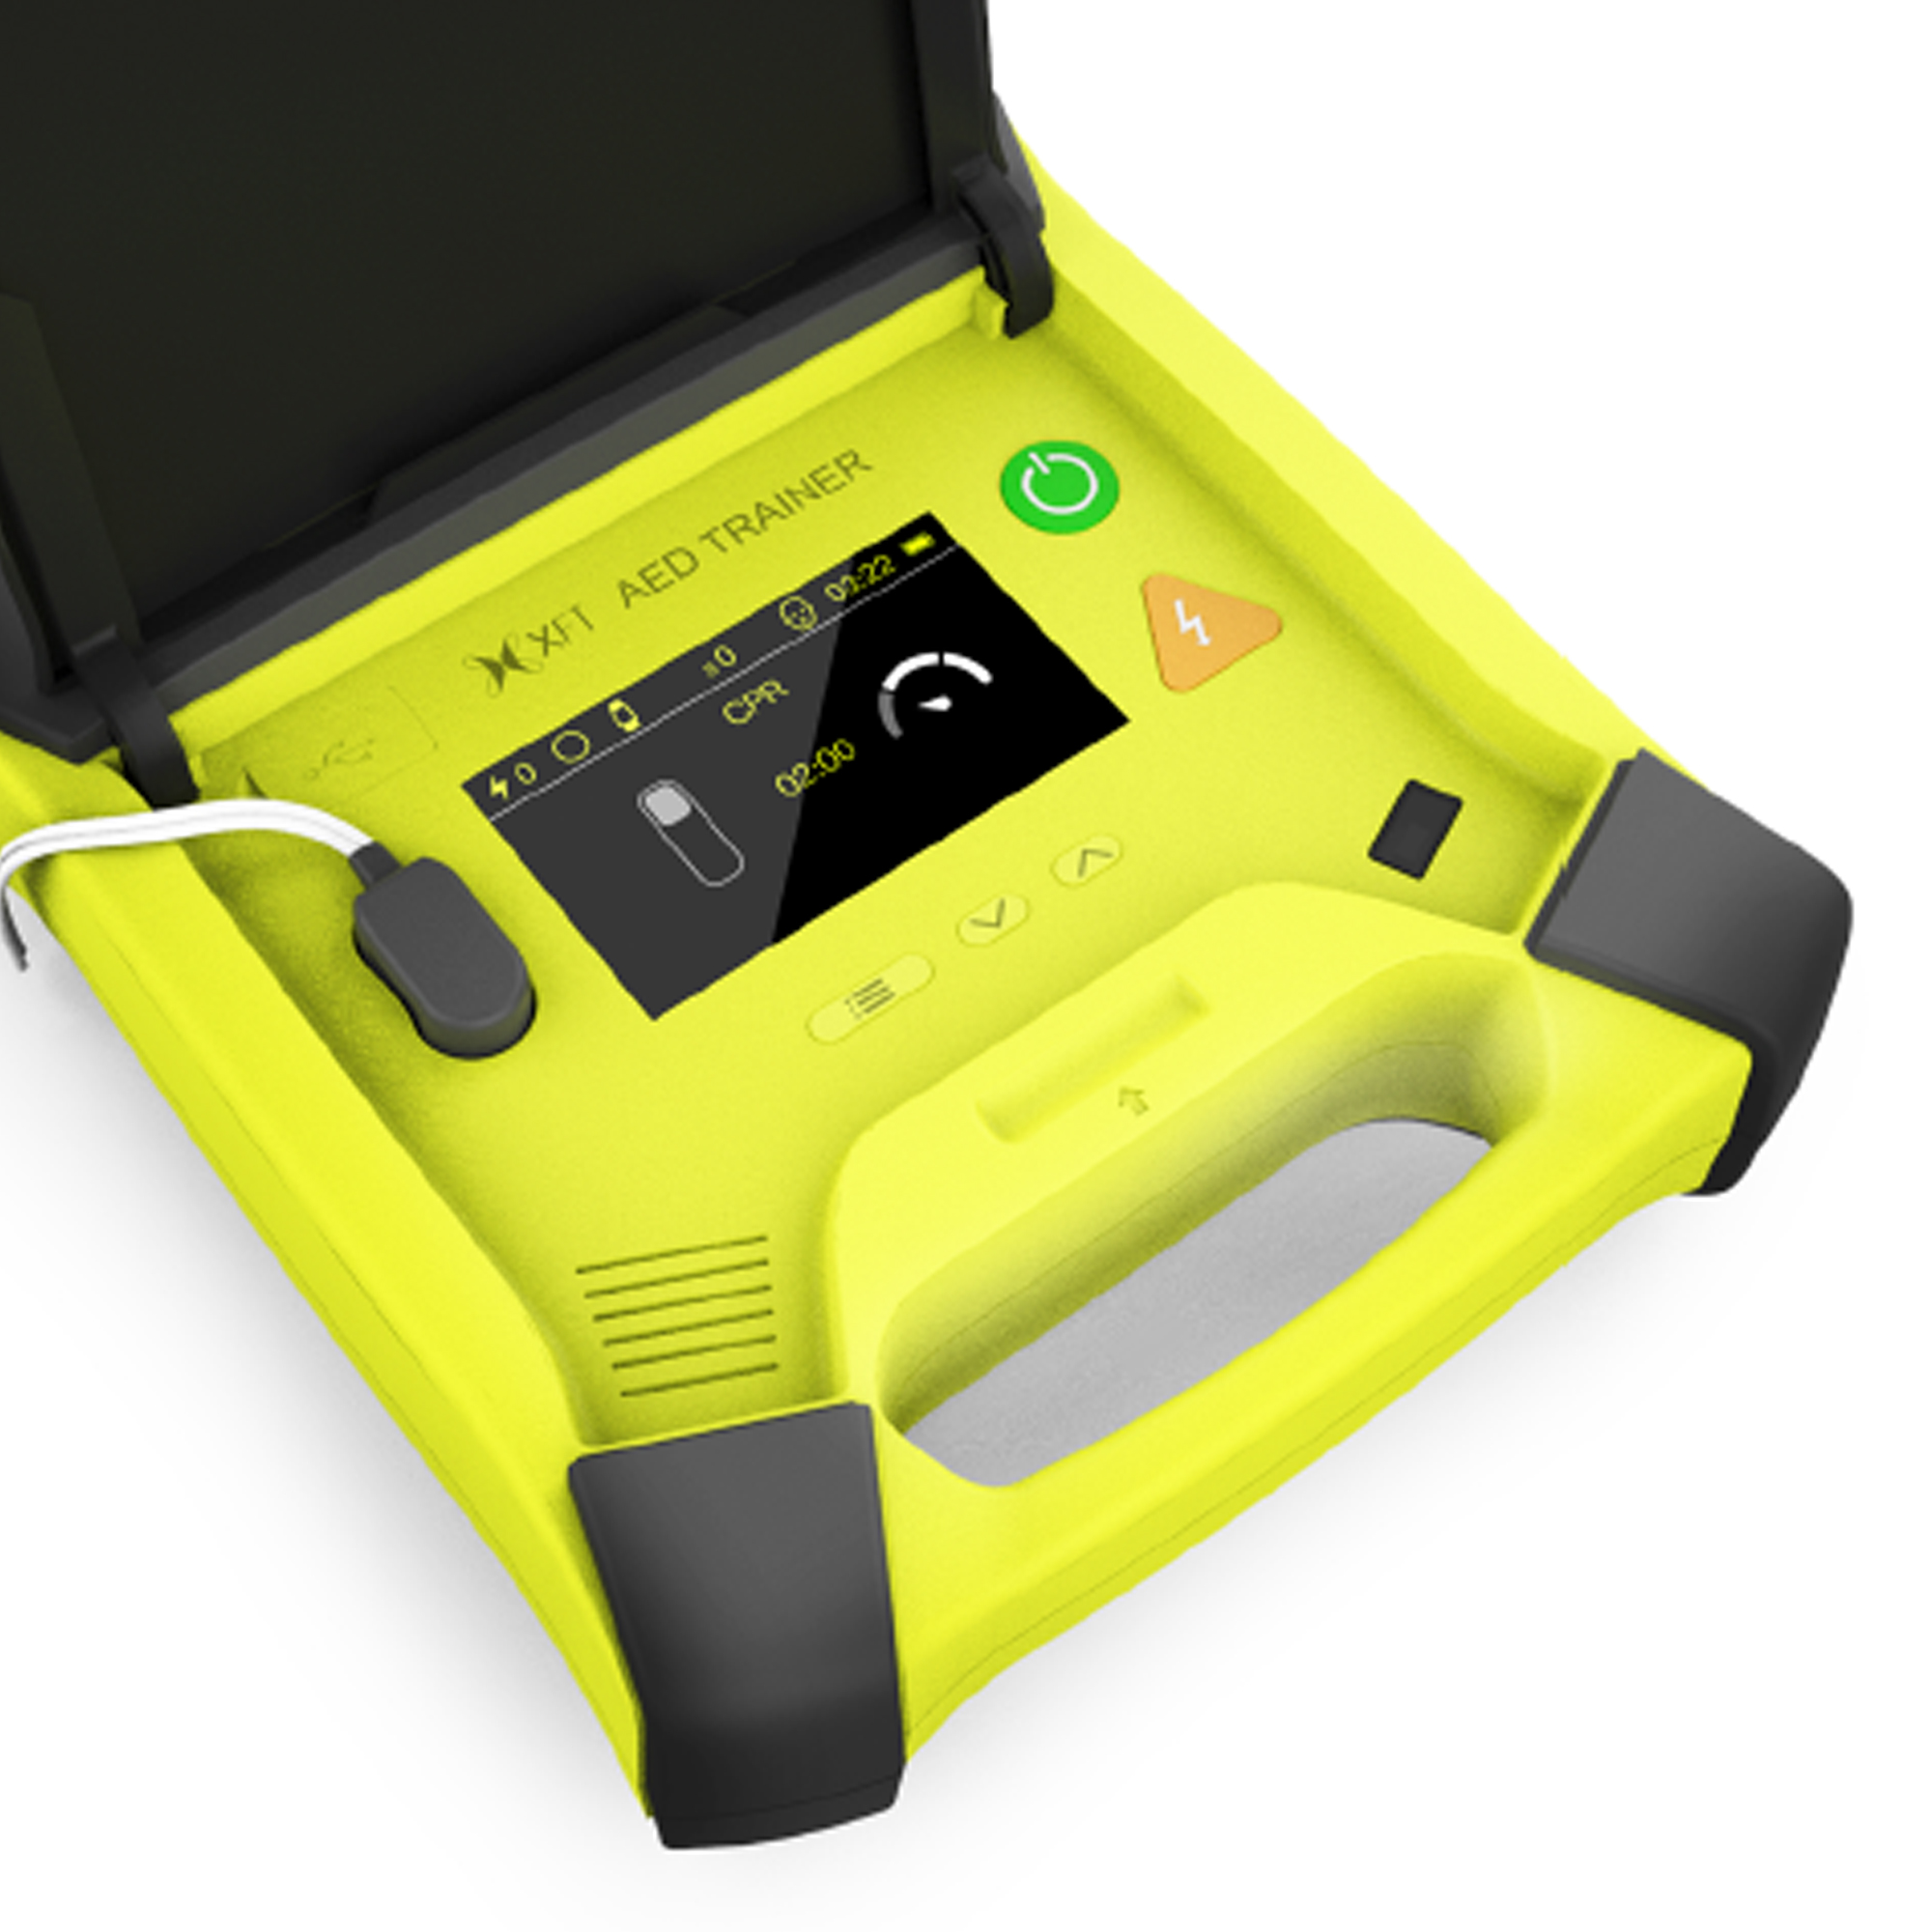 AED-Trainingsgerät mit 10 Notfall-Szenarien und Metronom-Funktion. Reagieren Sie ruhig auf jeden Notfall durch die Schulung mit dem XFT-120G Defibrillationstrainer.